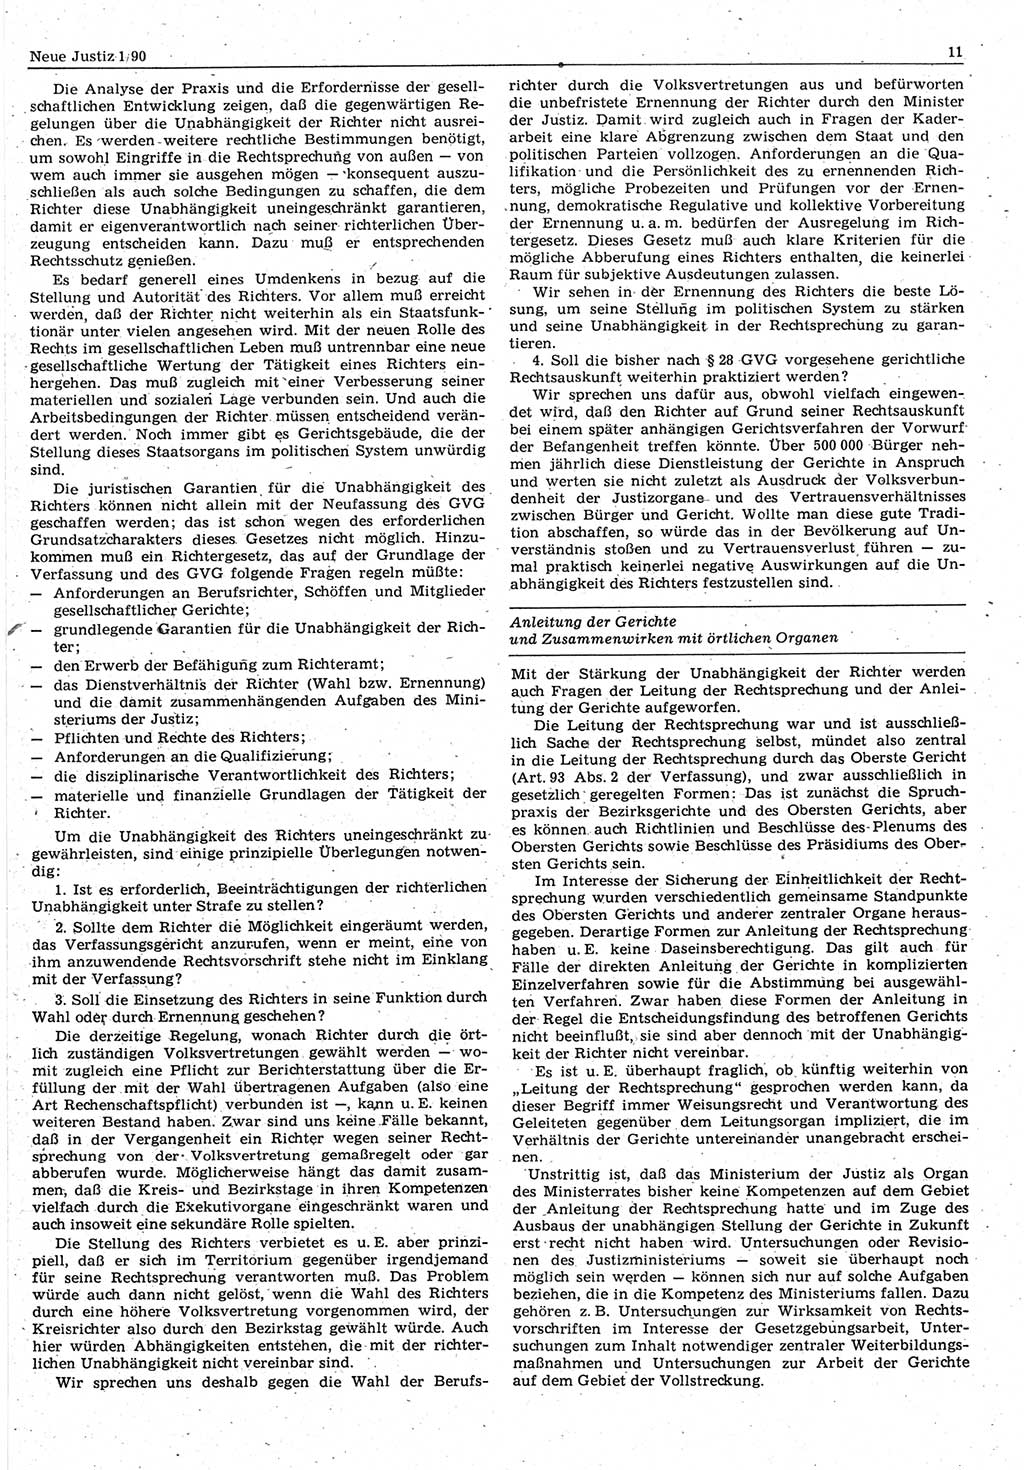 Neue Justiz (NJ), Zeitschrift für Rechtsetzung und Rechtsanwendung [Deutsche Demokratische Republik (DDR)], 44. Jahrgang 1990, Seite 11 (NJ DDR 1990, S. 11)